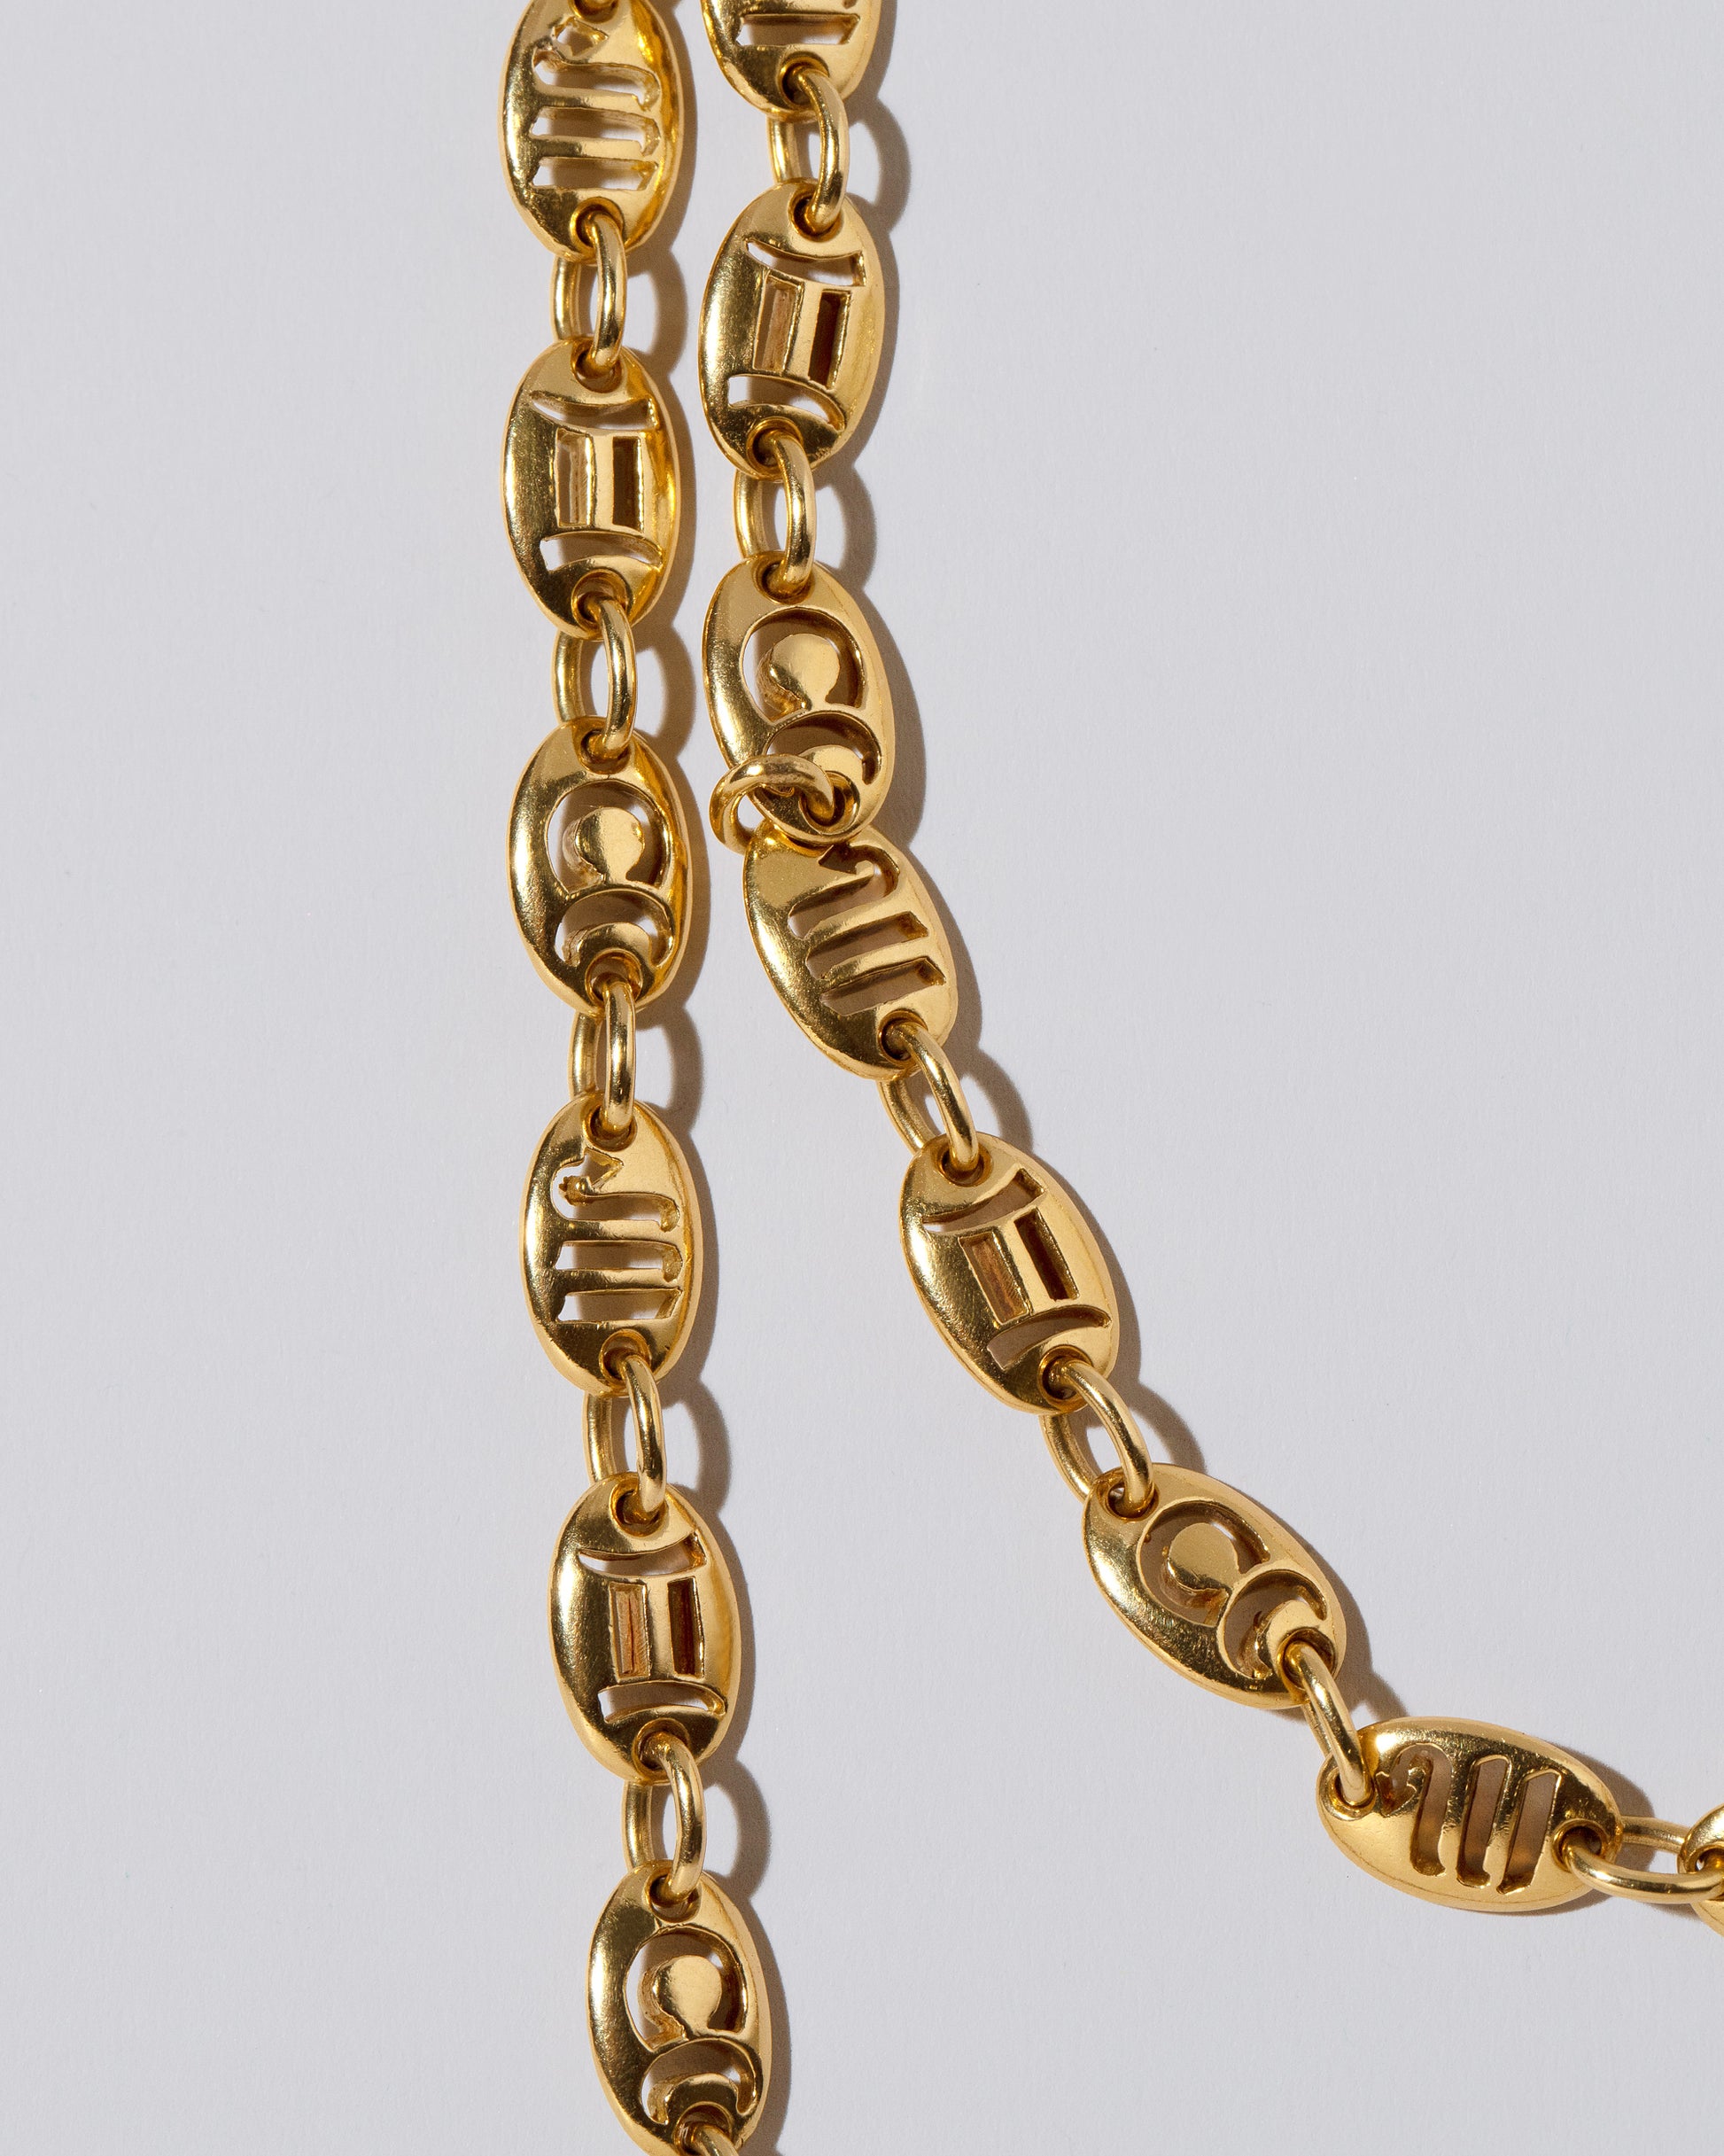 Jean Paris Zodiac Anchor Chain Necklace on light color background.